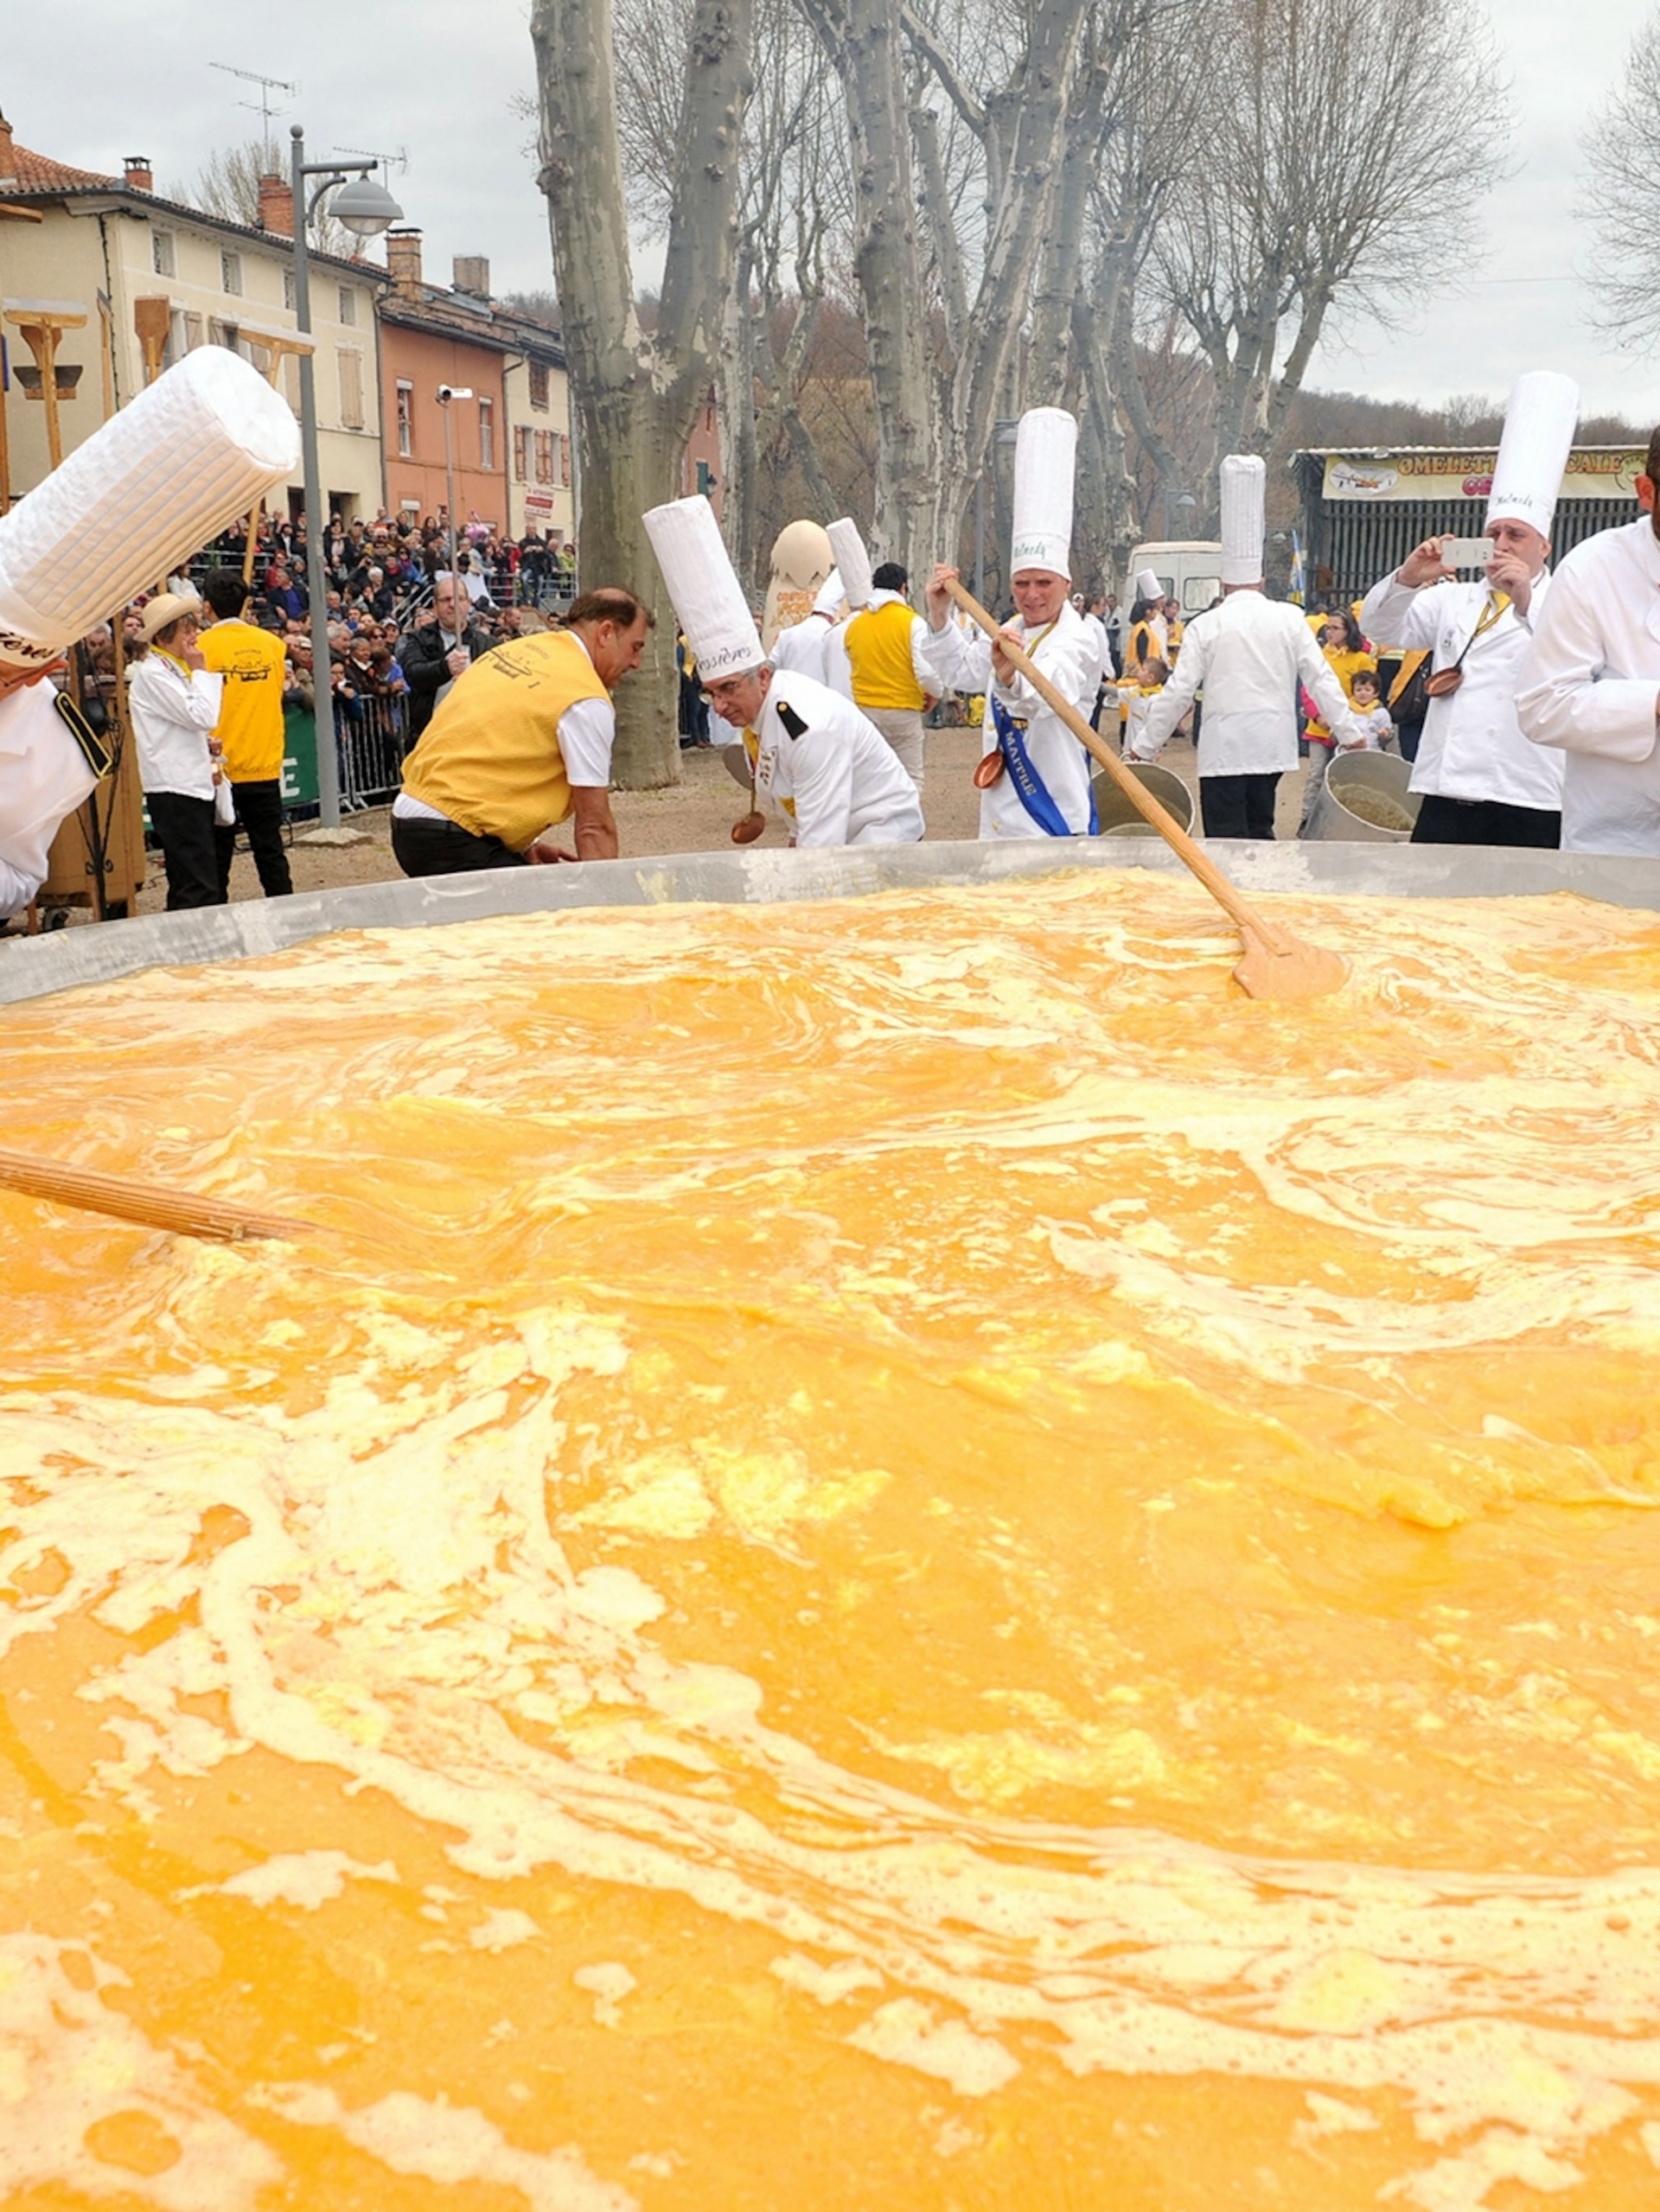 群眾聚集在貝西耶赫，圍觀巨型歐姆蛋的製作過程。 PHOTOGRAPH BY REMY GABALDA, GETTY IMAGES 